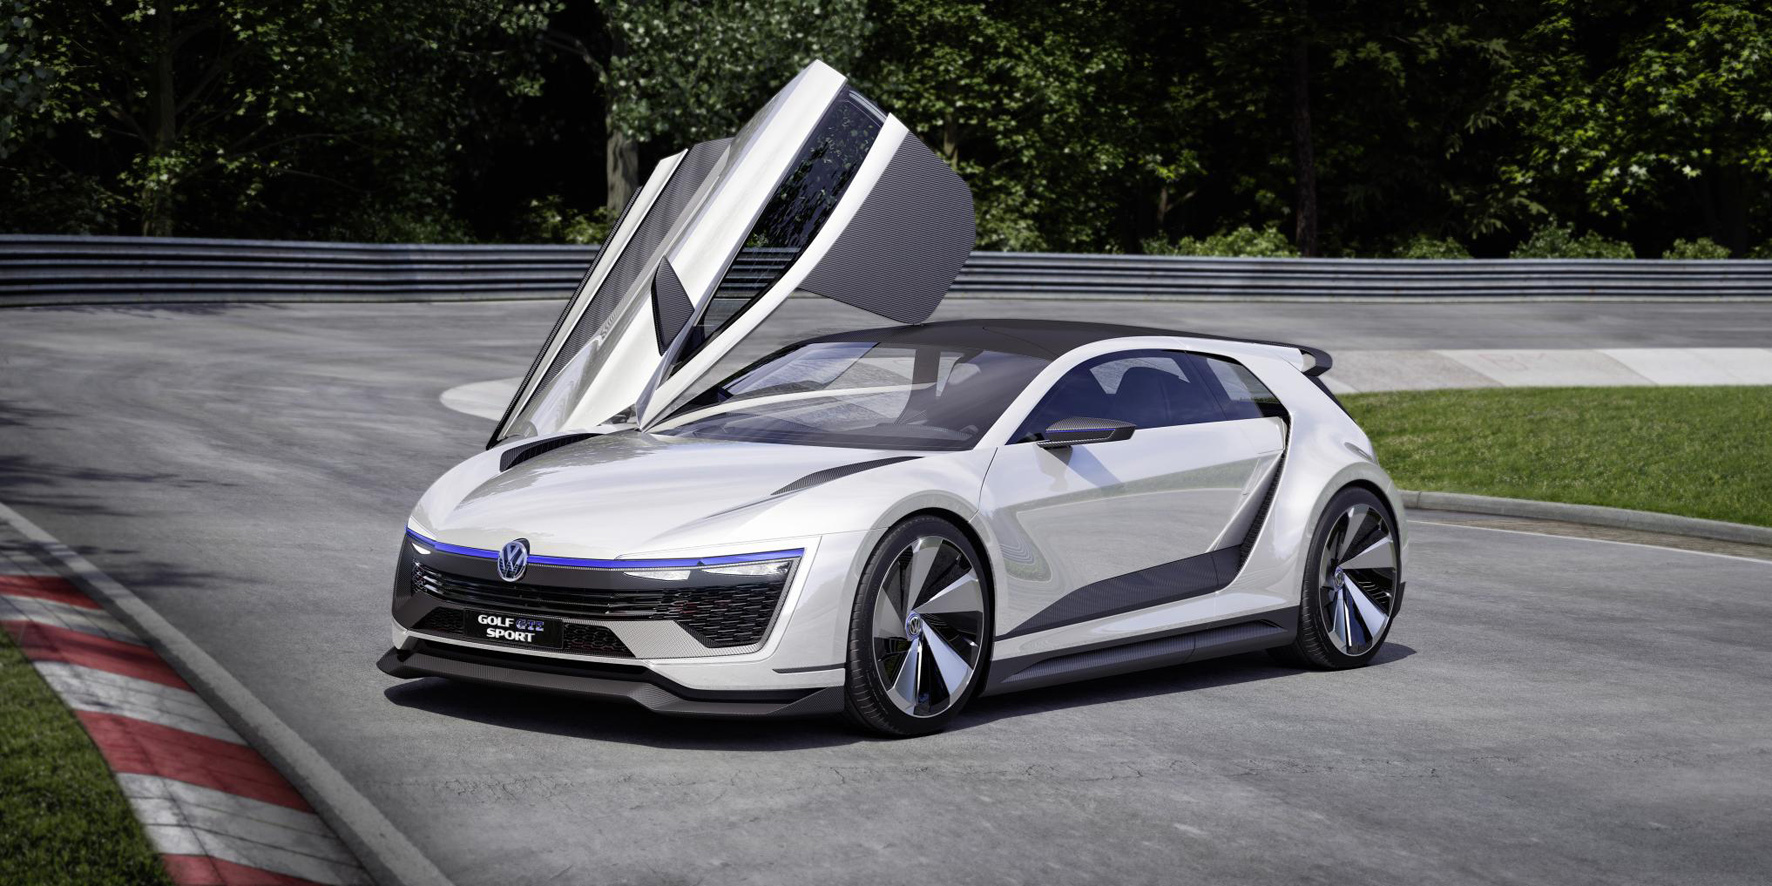 2015 Volkswagen Golf GTE Sport concept